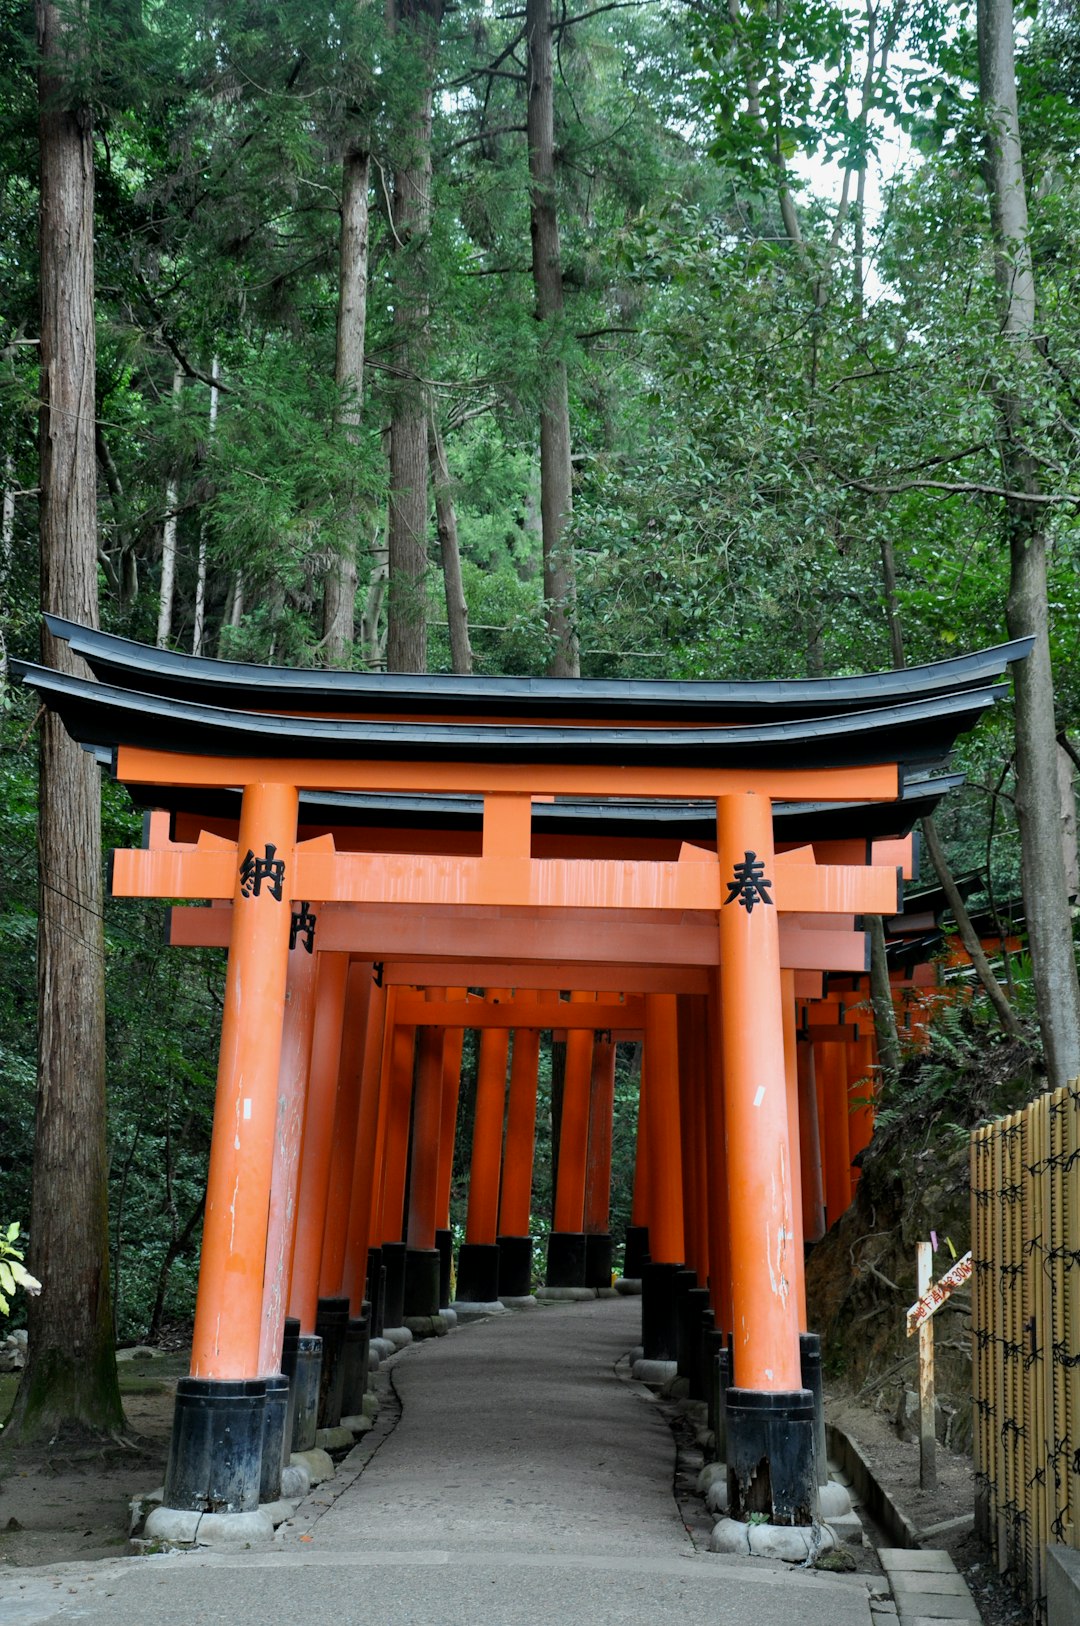 Place of worship photo spot Fushimi Inari Taisha Nakano